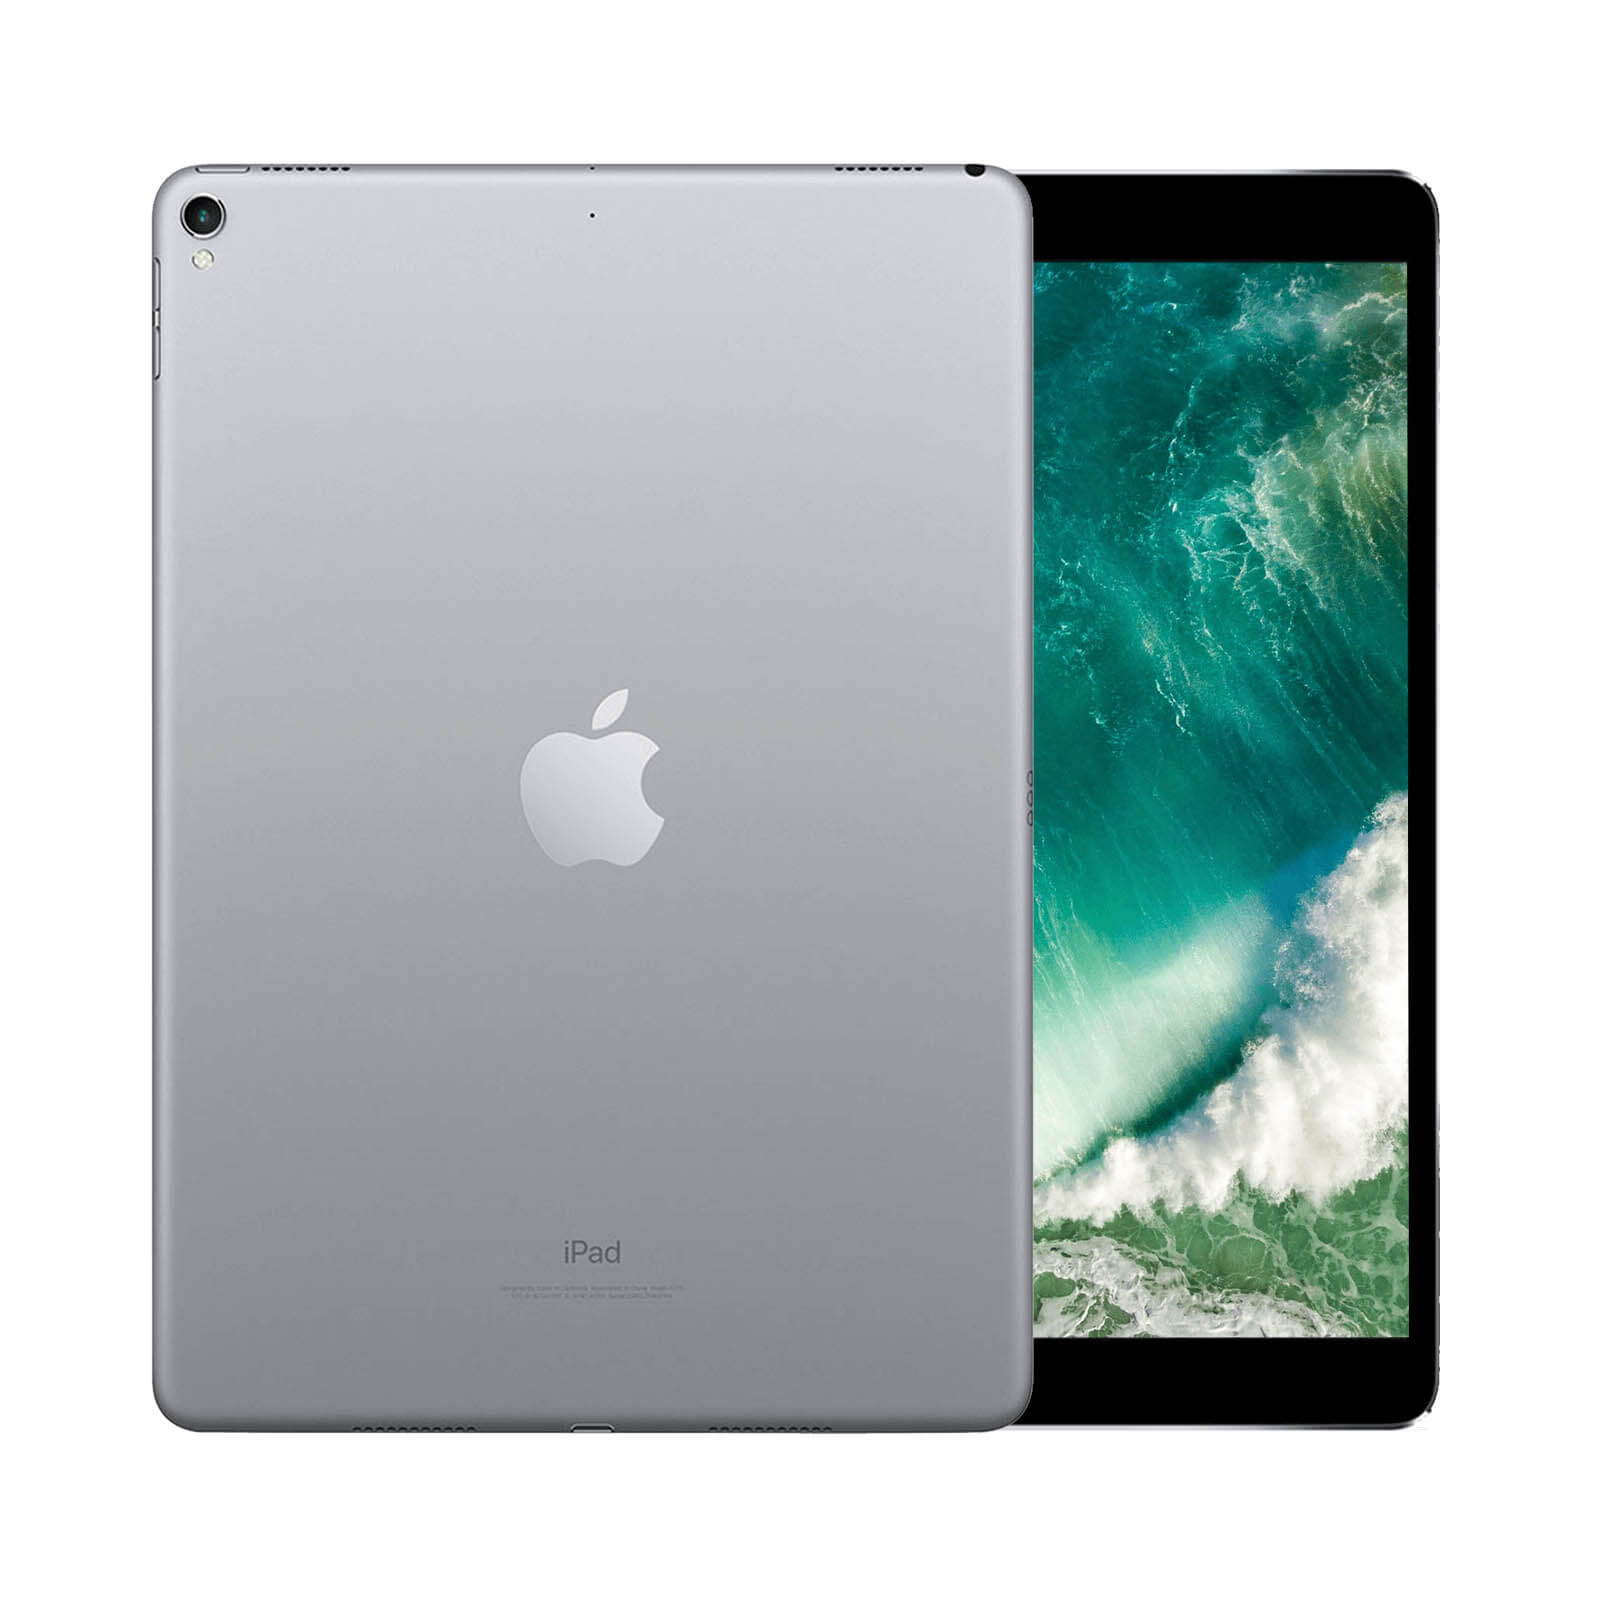 iPad Pro 10.5 Inch 512GB Space Grey Good - WiFi